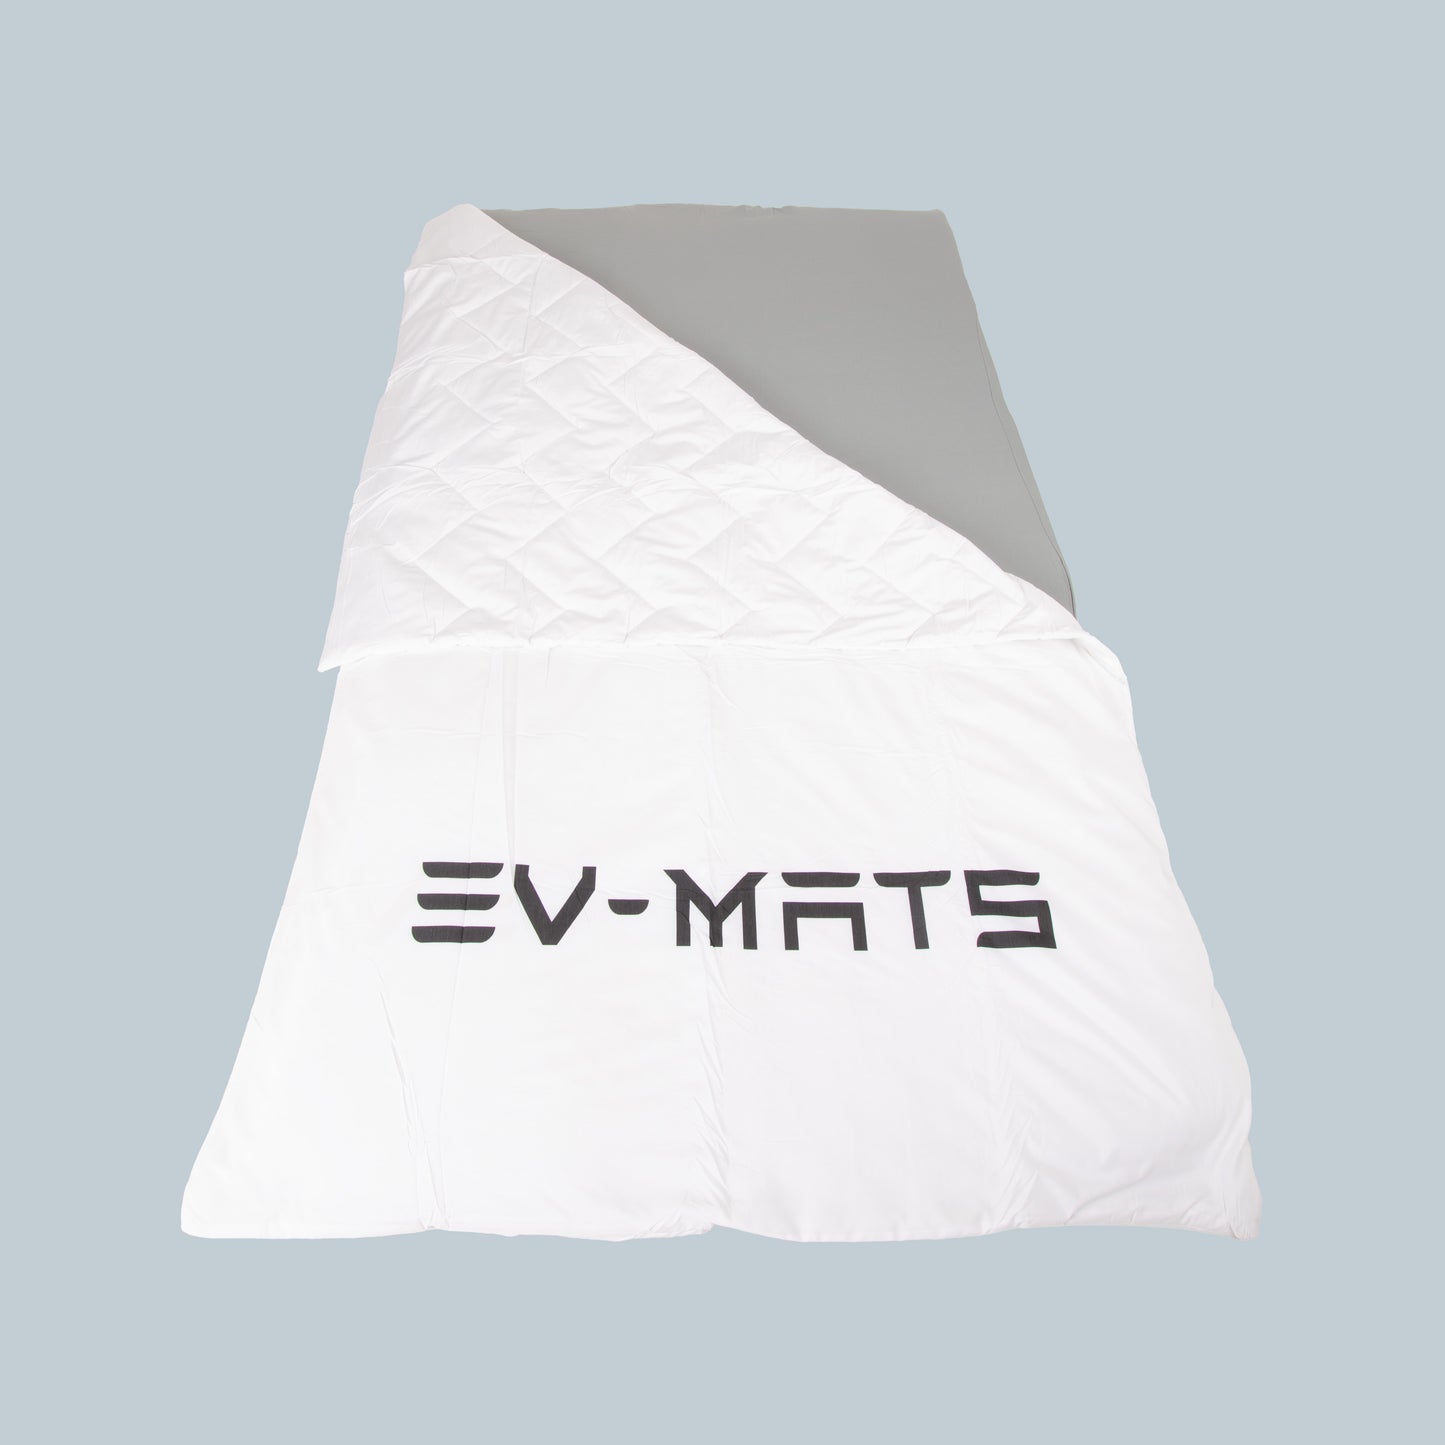 EV-MATS Couette en coton